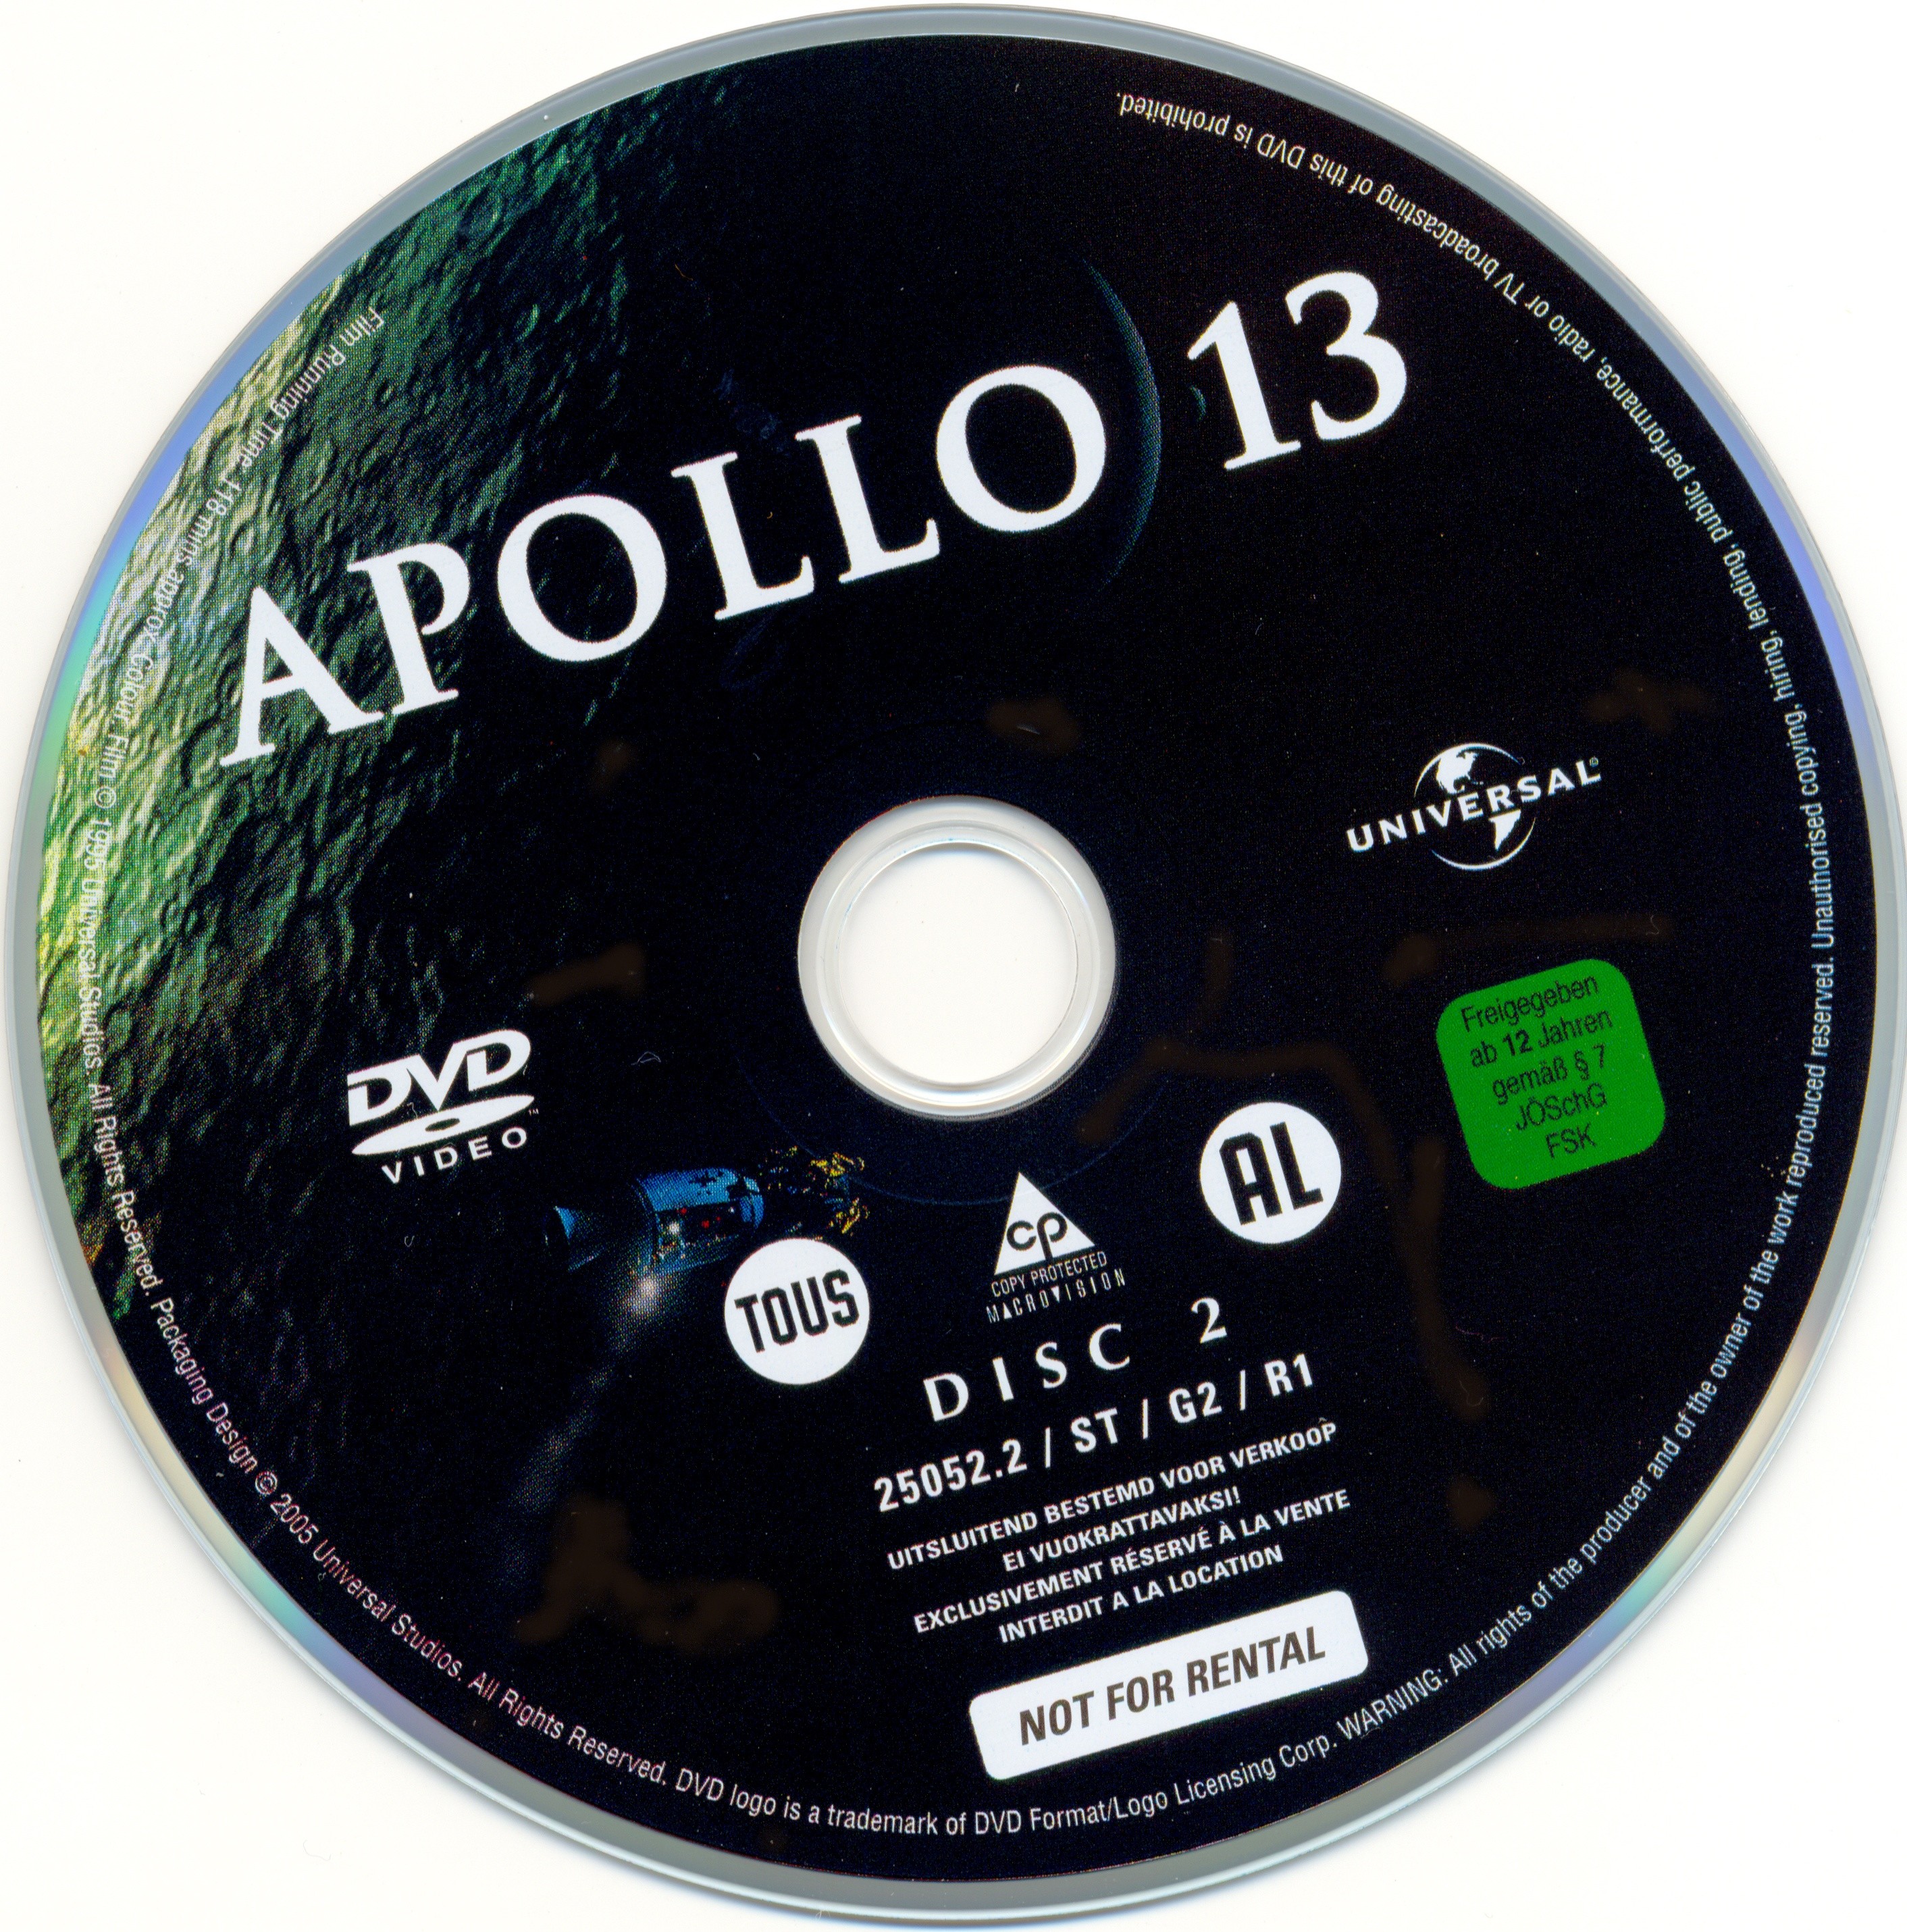 Apollo 13 DISC 2